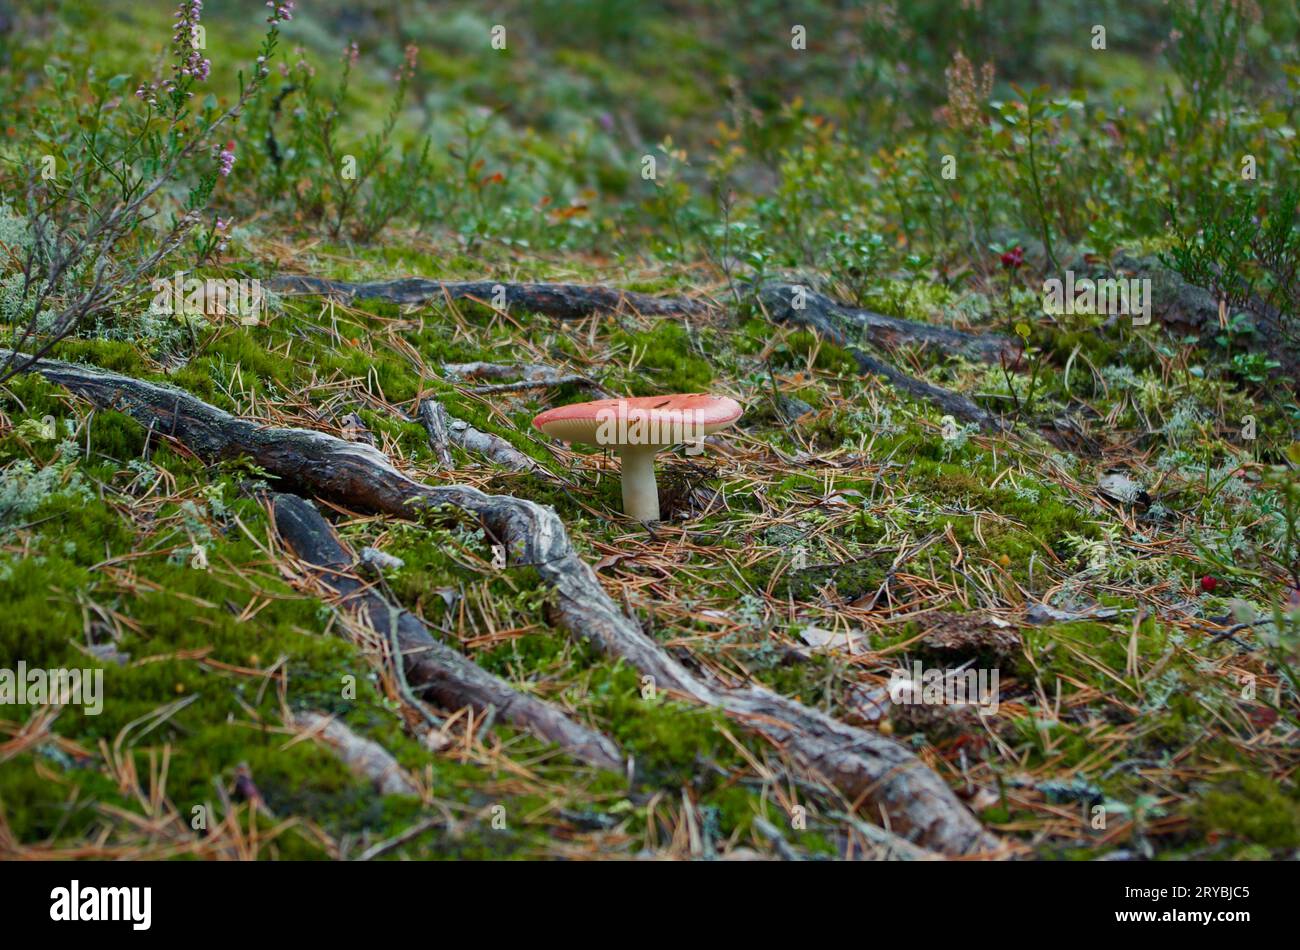 Russula-Pilz mit roter Kappe wächst in grünem Moos mit Baumwurzeln und Kiefernnadeln in der Waldlandschaft im Herbst. Stockfoto